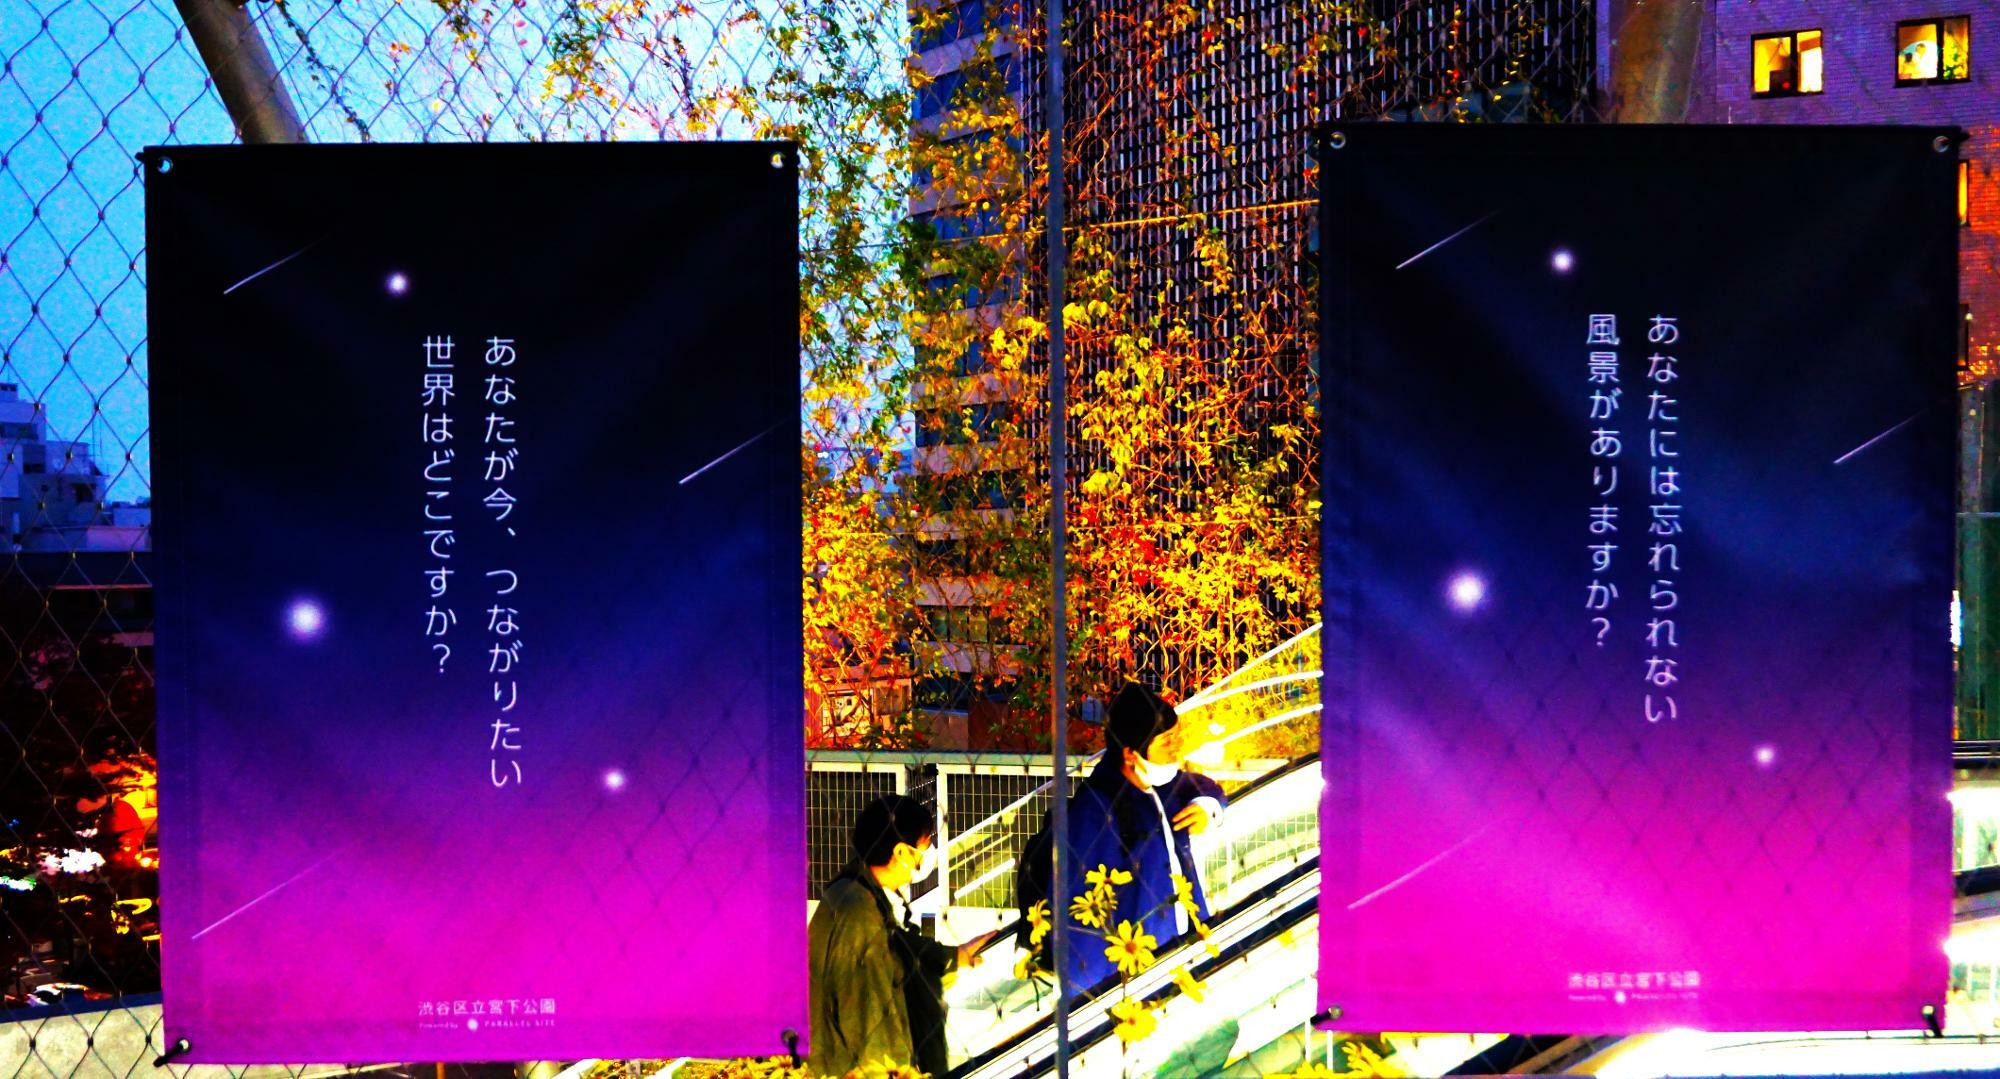 「あなたには忘れられない風景がありますか？」「あなたが今、つながりたい世界はどこですか？」渋谷区宮下公園のポスターのコピーがちょっとせつない